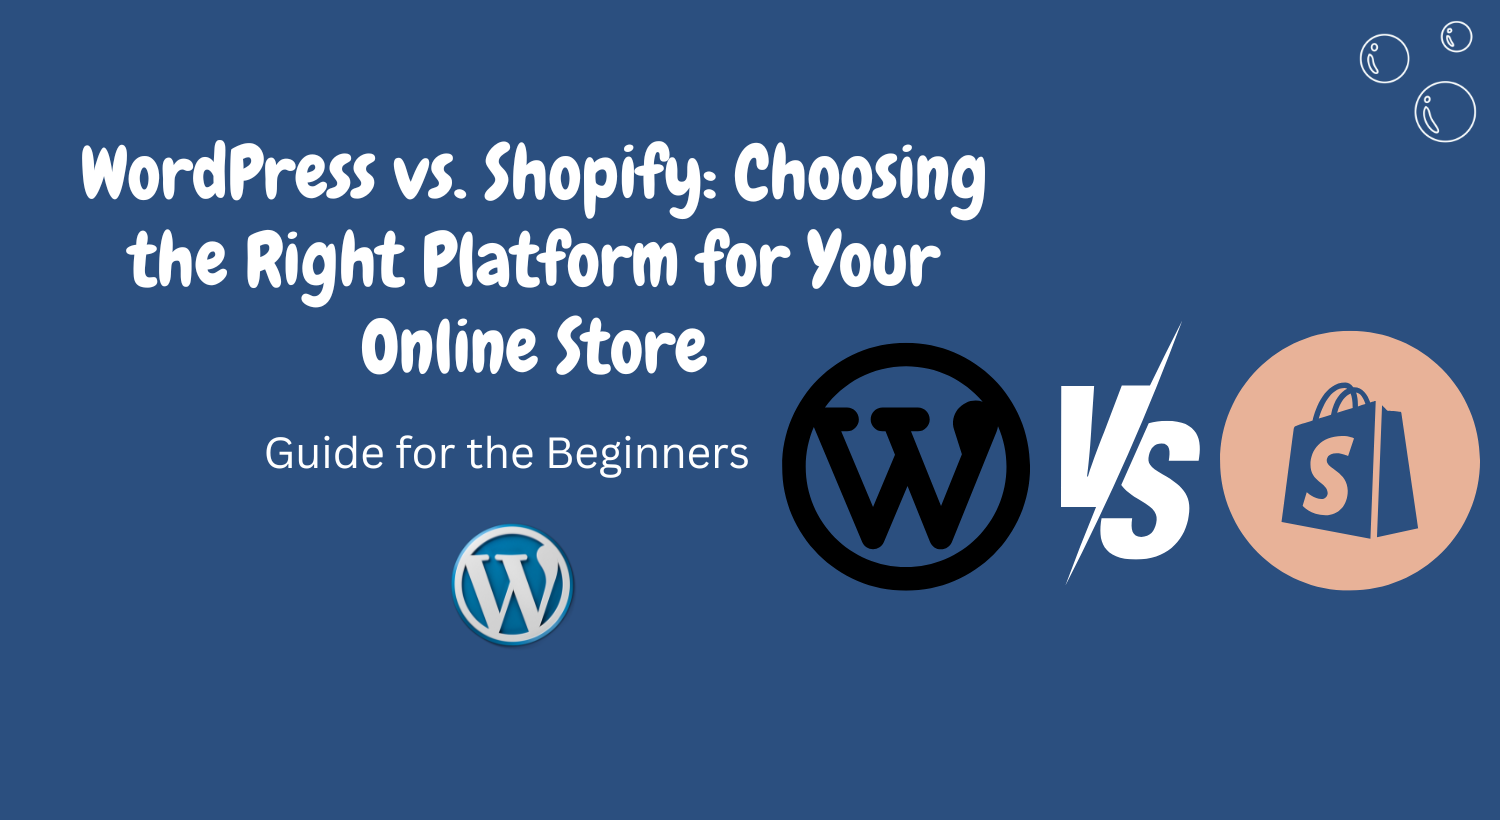 WordPress vs. Shopify